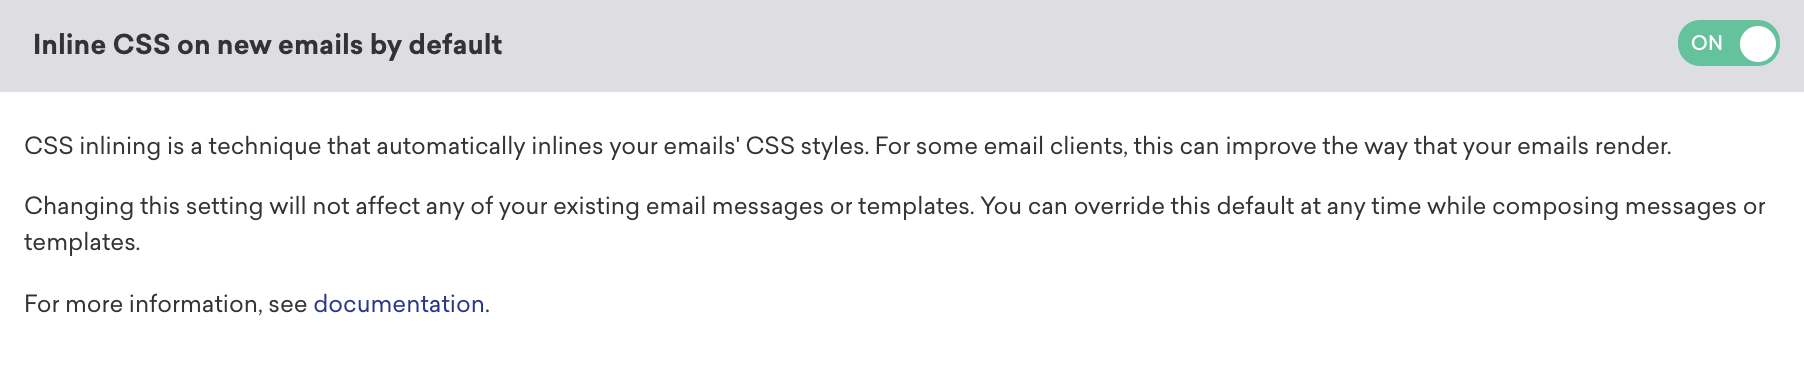 メール設定にあるデフォルトの新着メールの CSS のインライン